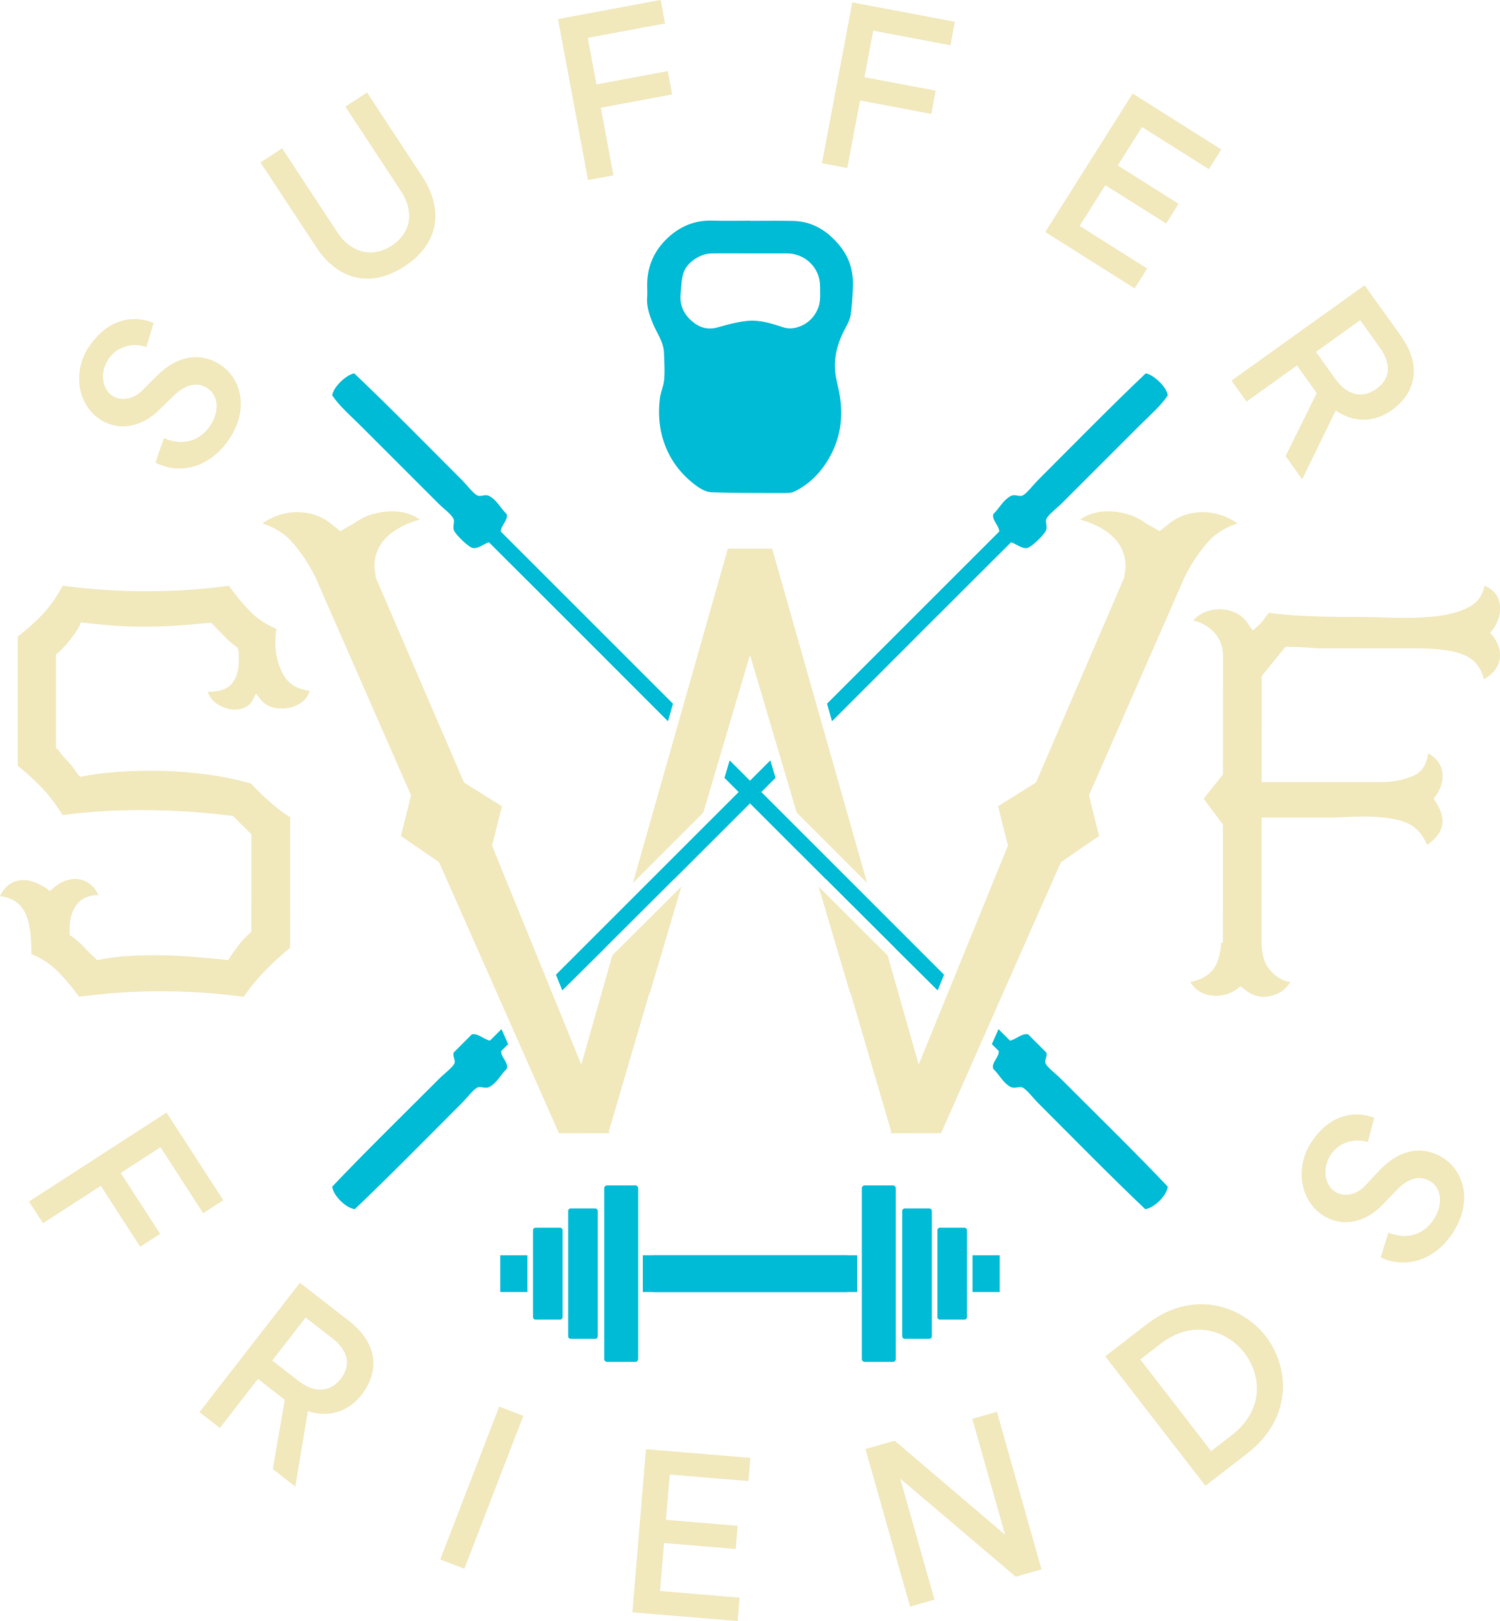 sufferwithfriends